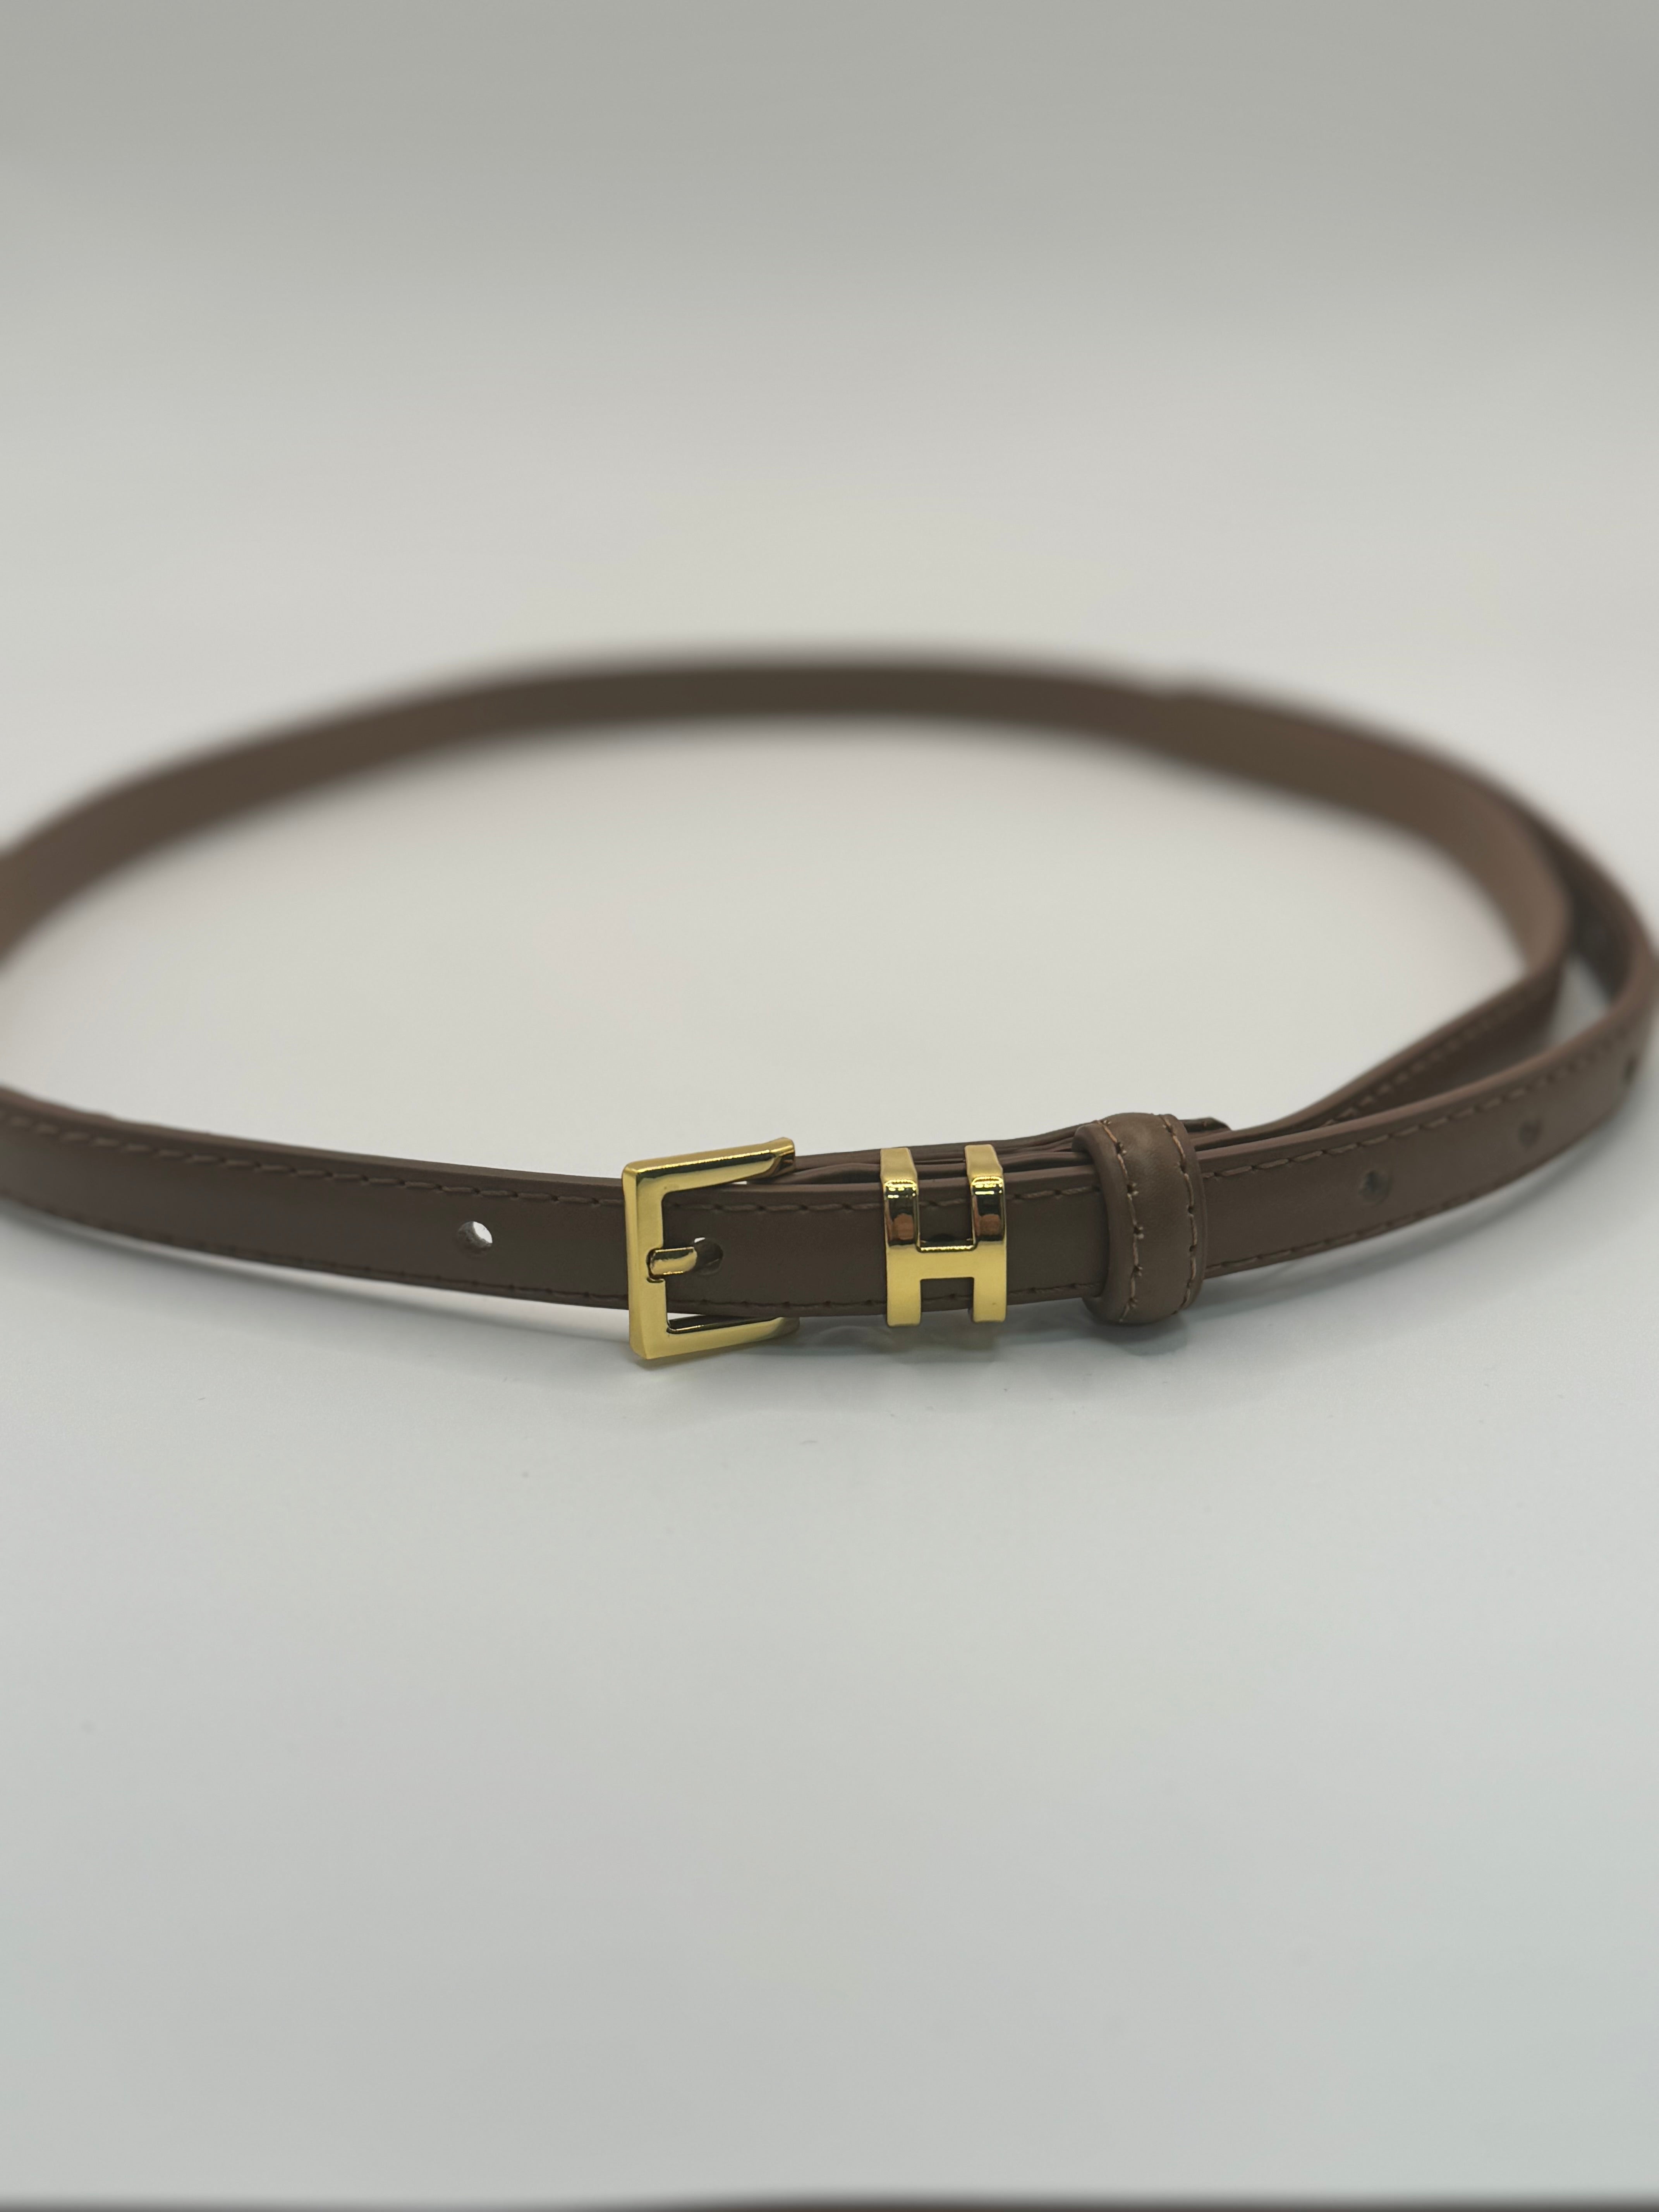 H style belt (2 colors)